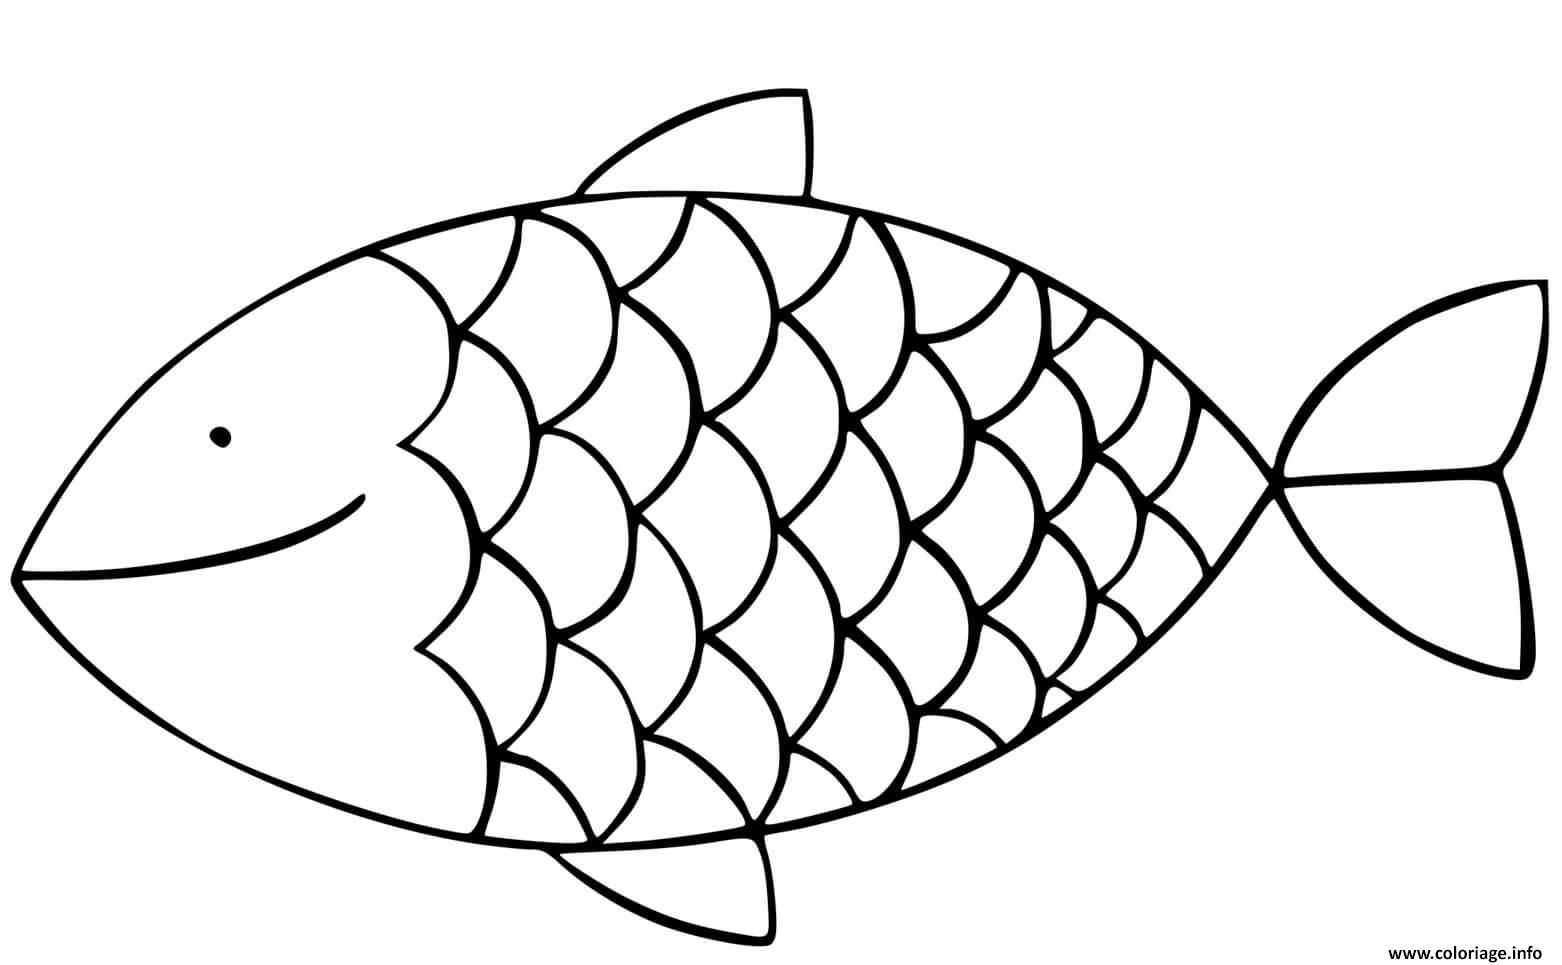 Dessin poisson avril simple facile Coloriage Gratuit à Imprimer